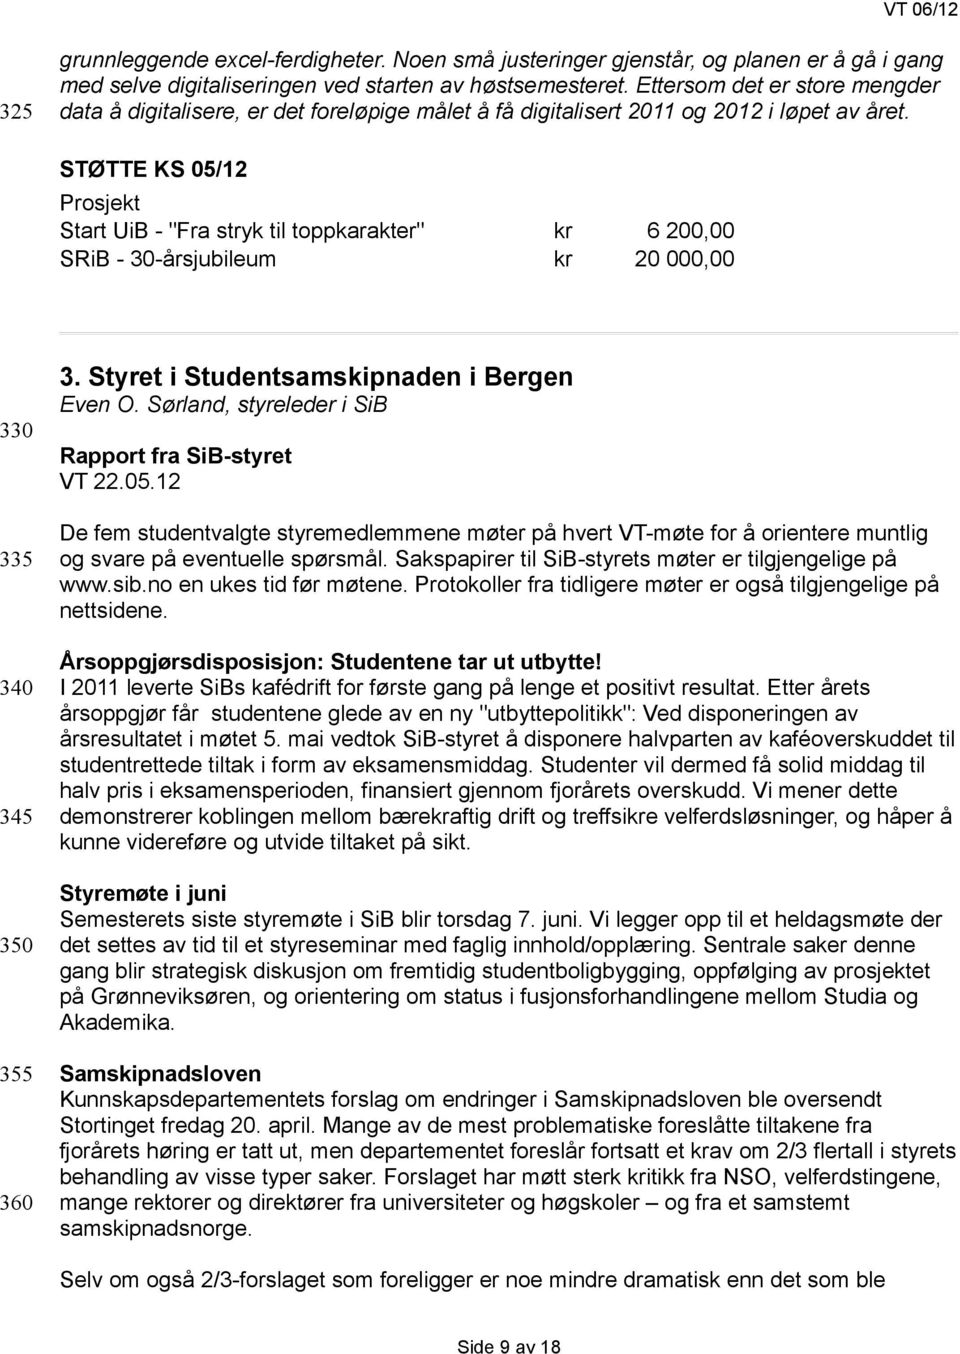 STØTTE KS 05/12 Prosjekt Start UiB - "Fra stryk til toppkarakter" kr 6 200,00 SRiB - 30-årsjubileum kr 20 000,00 330 335 340 345 350 355 360 3. Styret i Studentsamskipnaden i Bergen Even O.